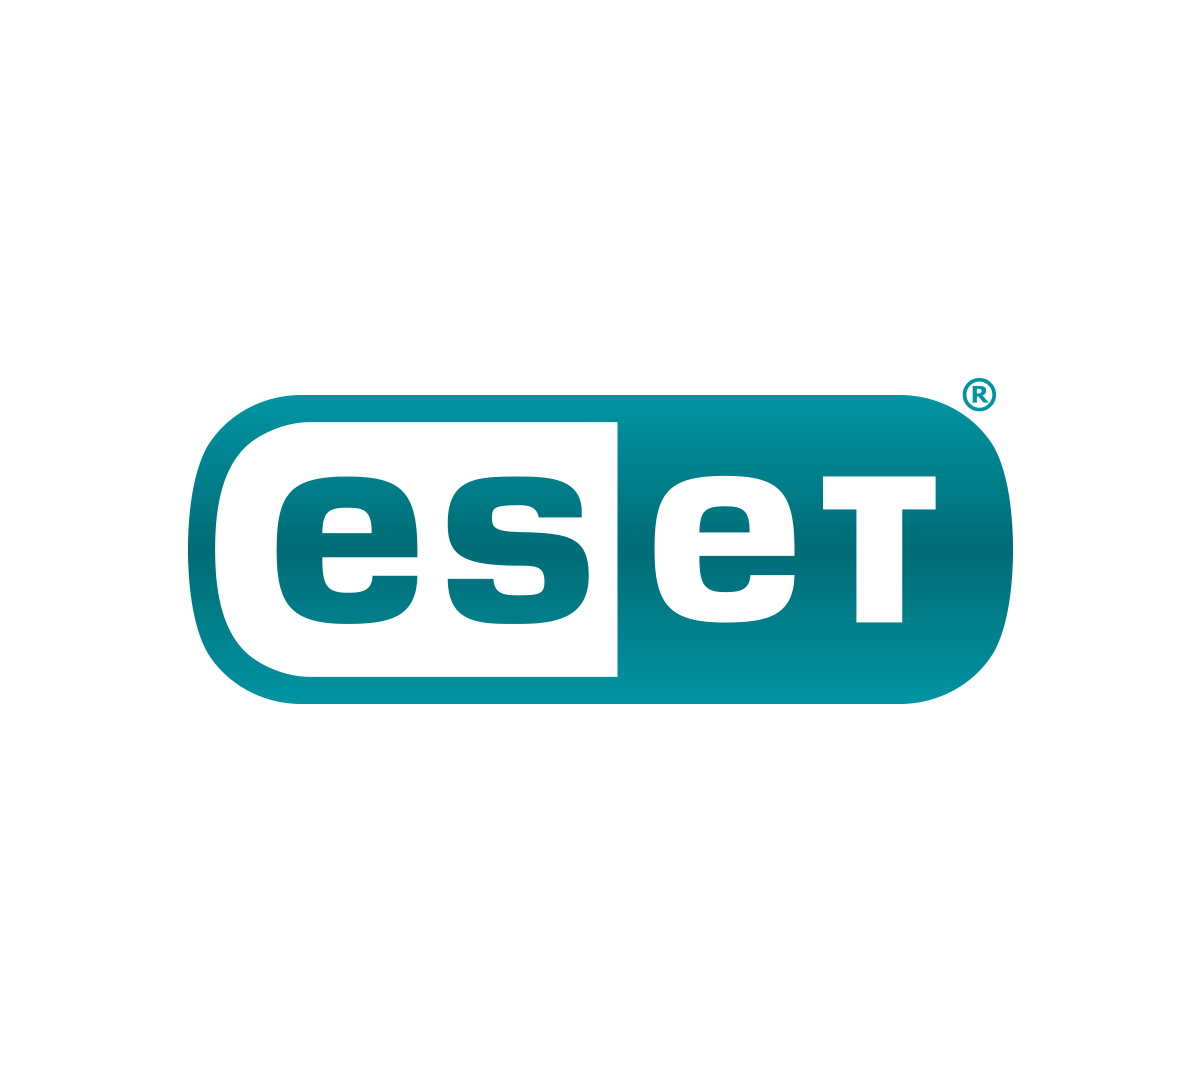 ESET Logo (Slogansız)